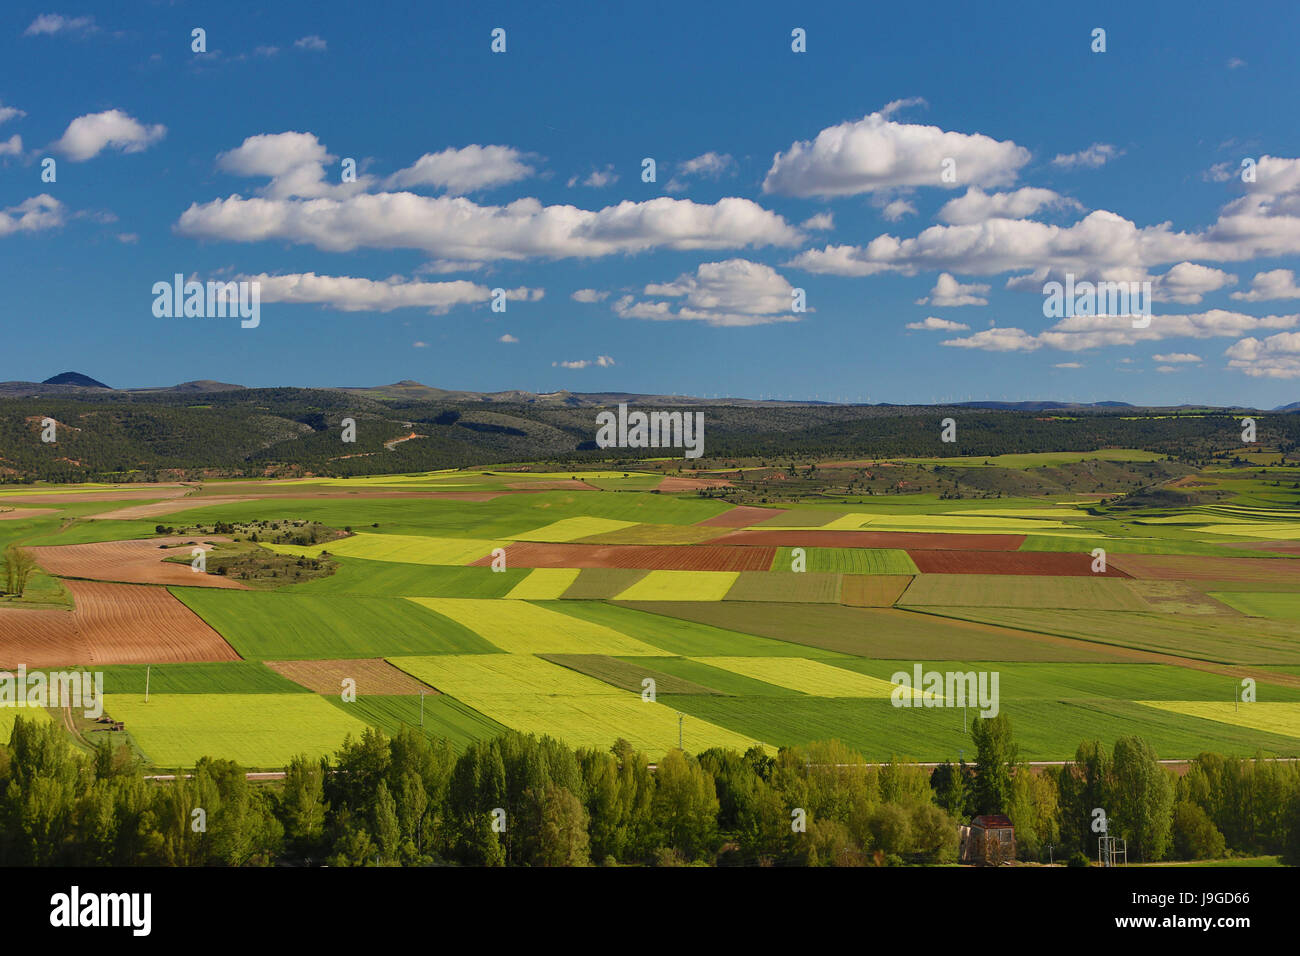 Spain, Castilla Leon Community, Soria Province Landscape, Stock Photo